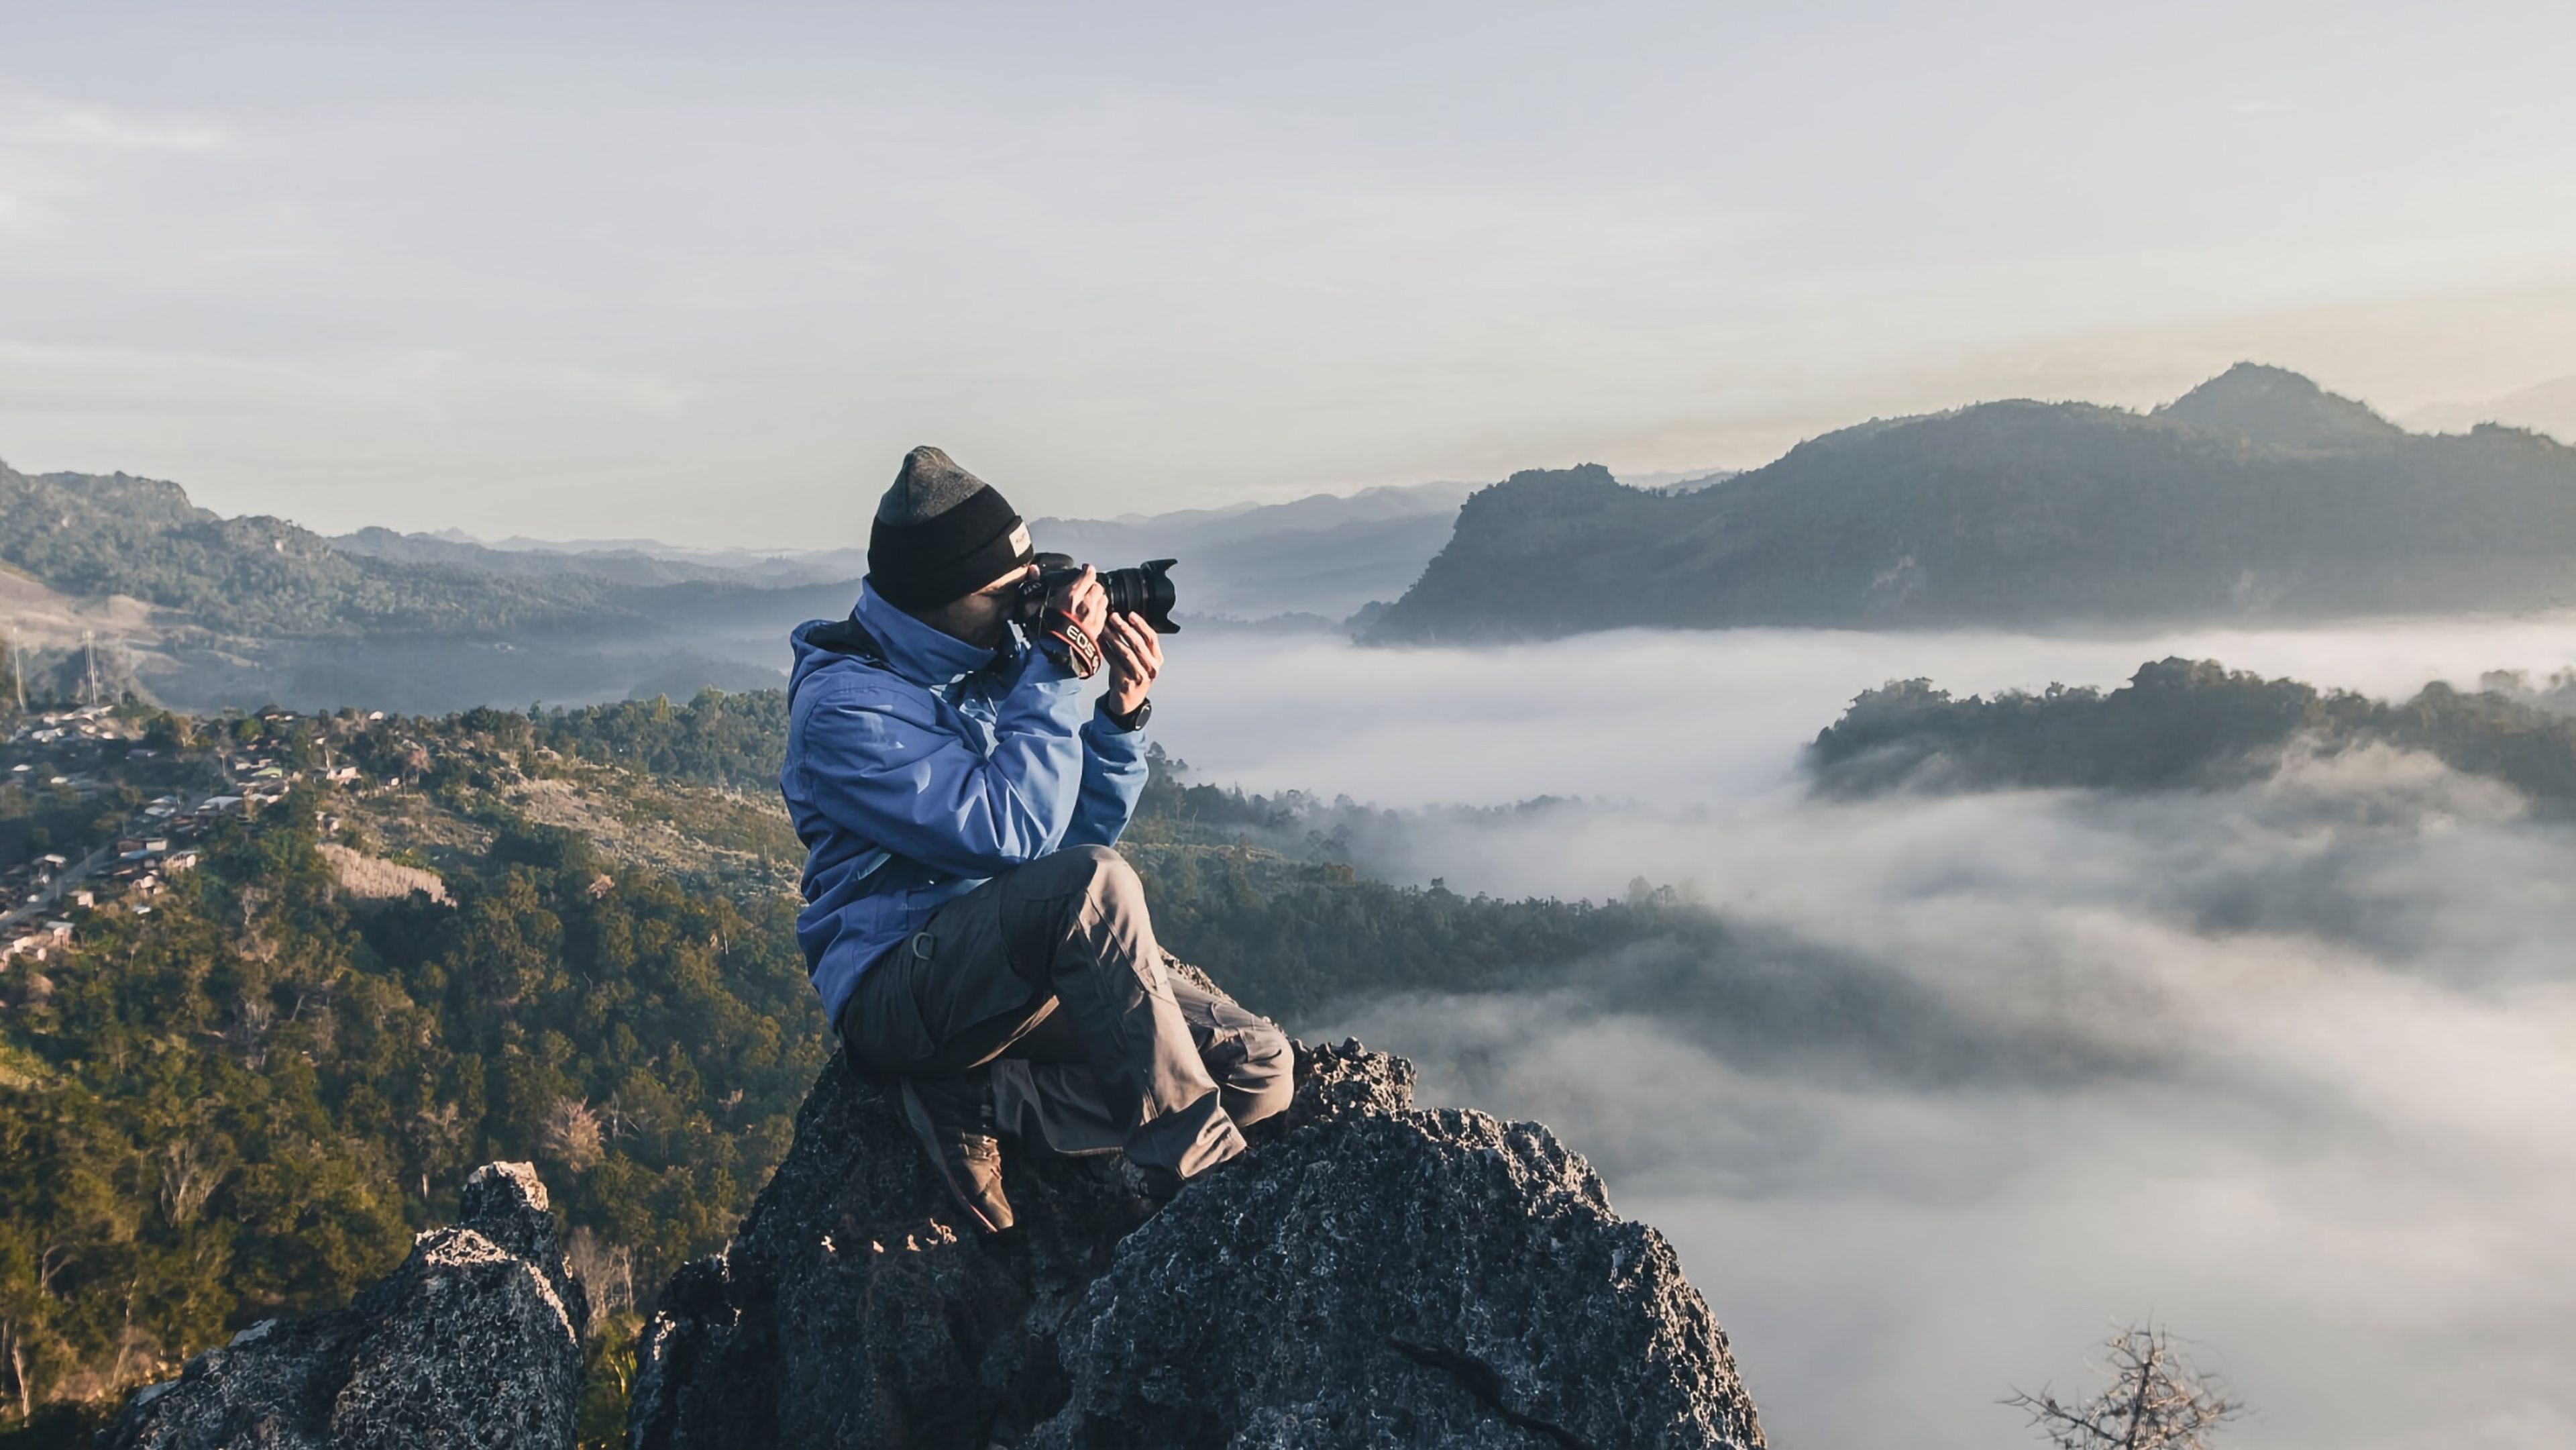 Persona en lo alto de una montaña tomando una fotografía con una cámara Canon